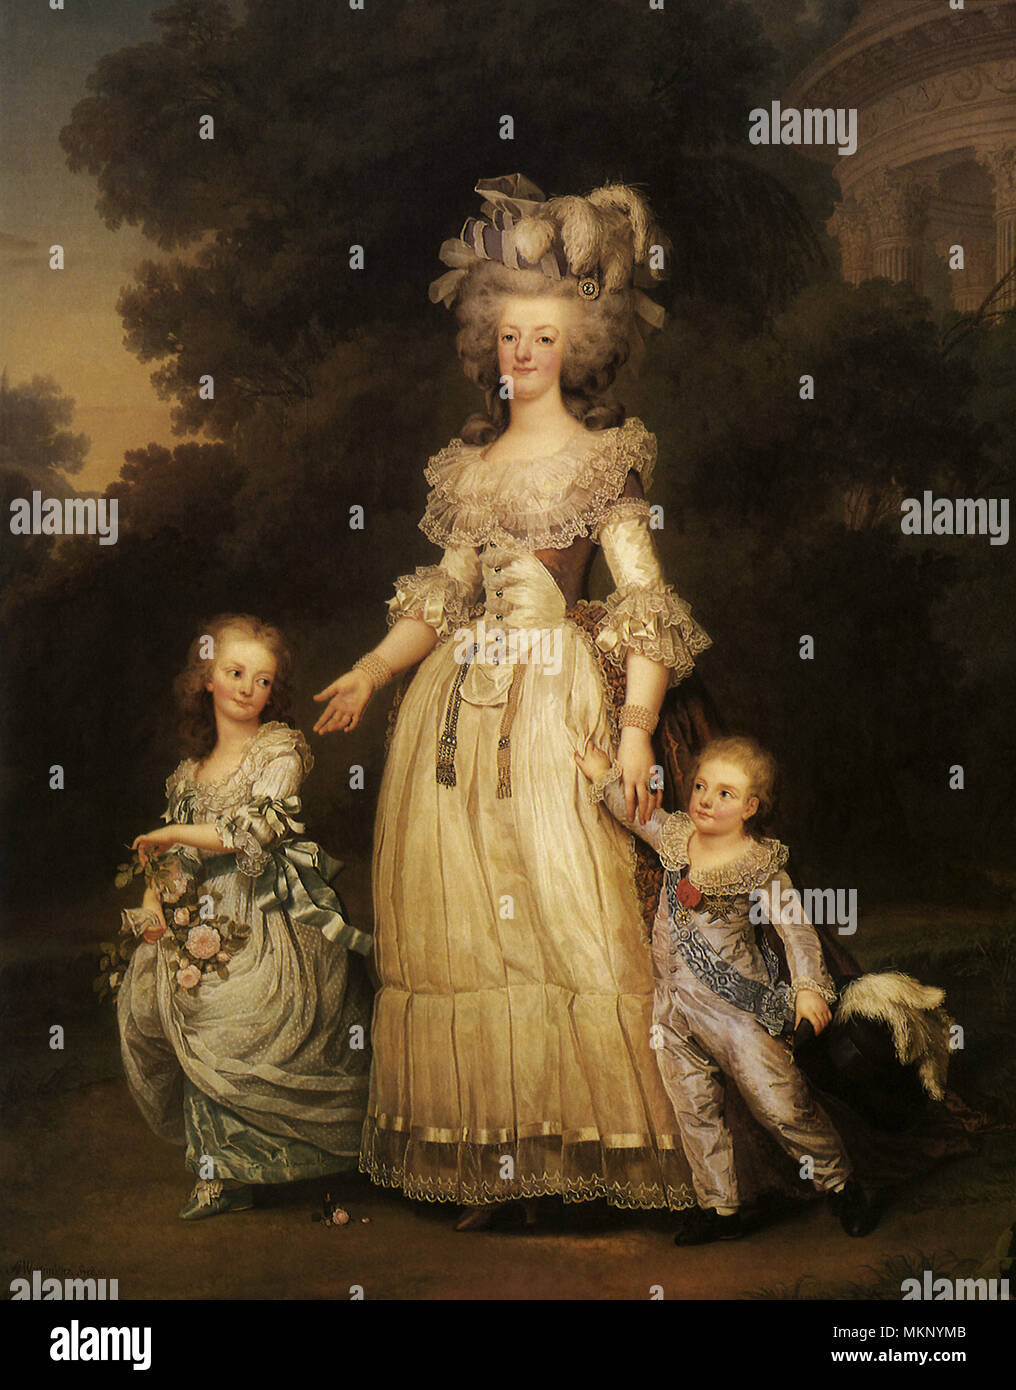 Ritratto della regina Maria Antonietta con i suoi figli 1785 Foto Stock